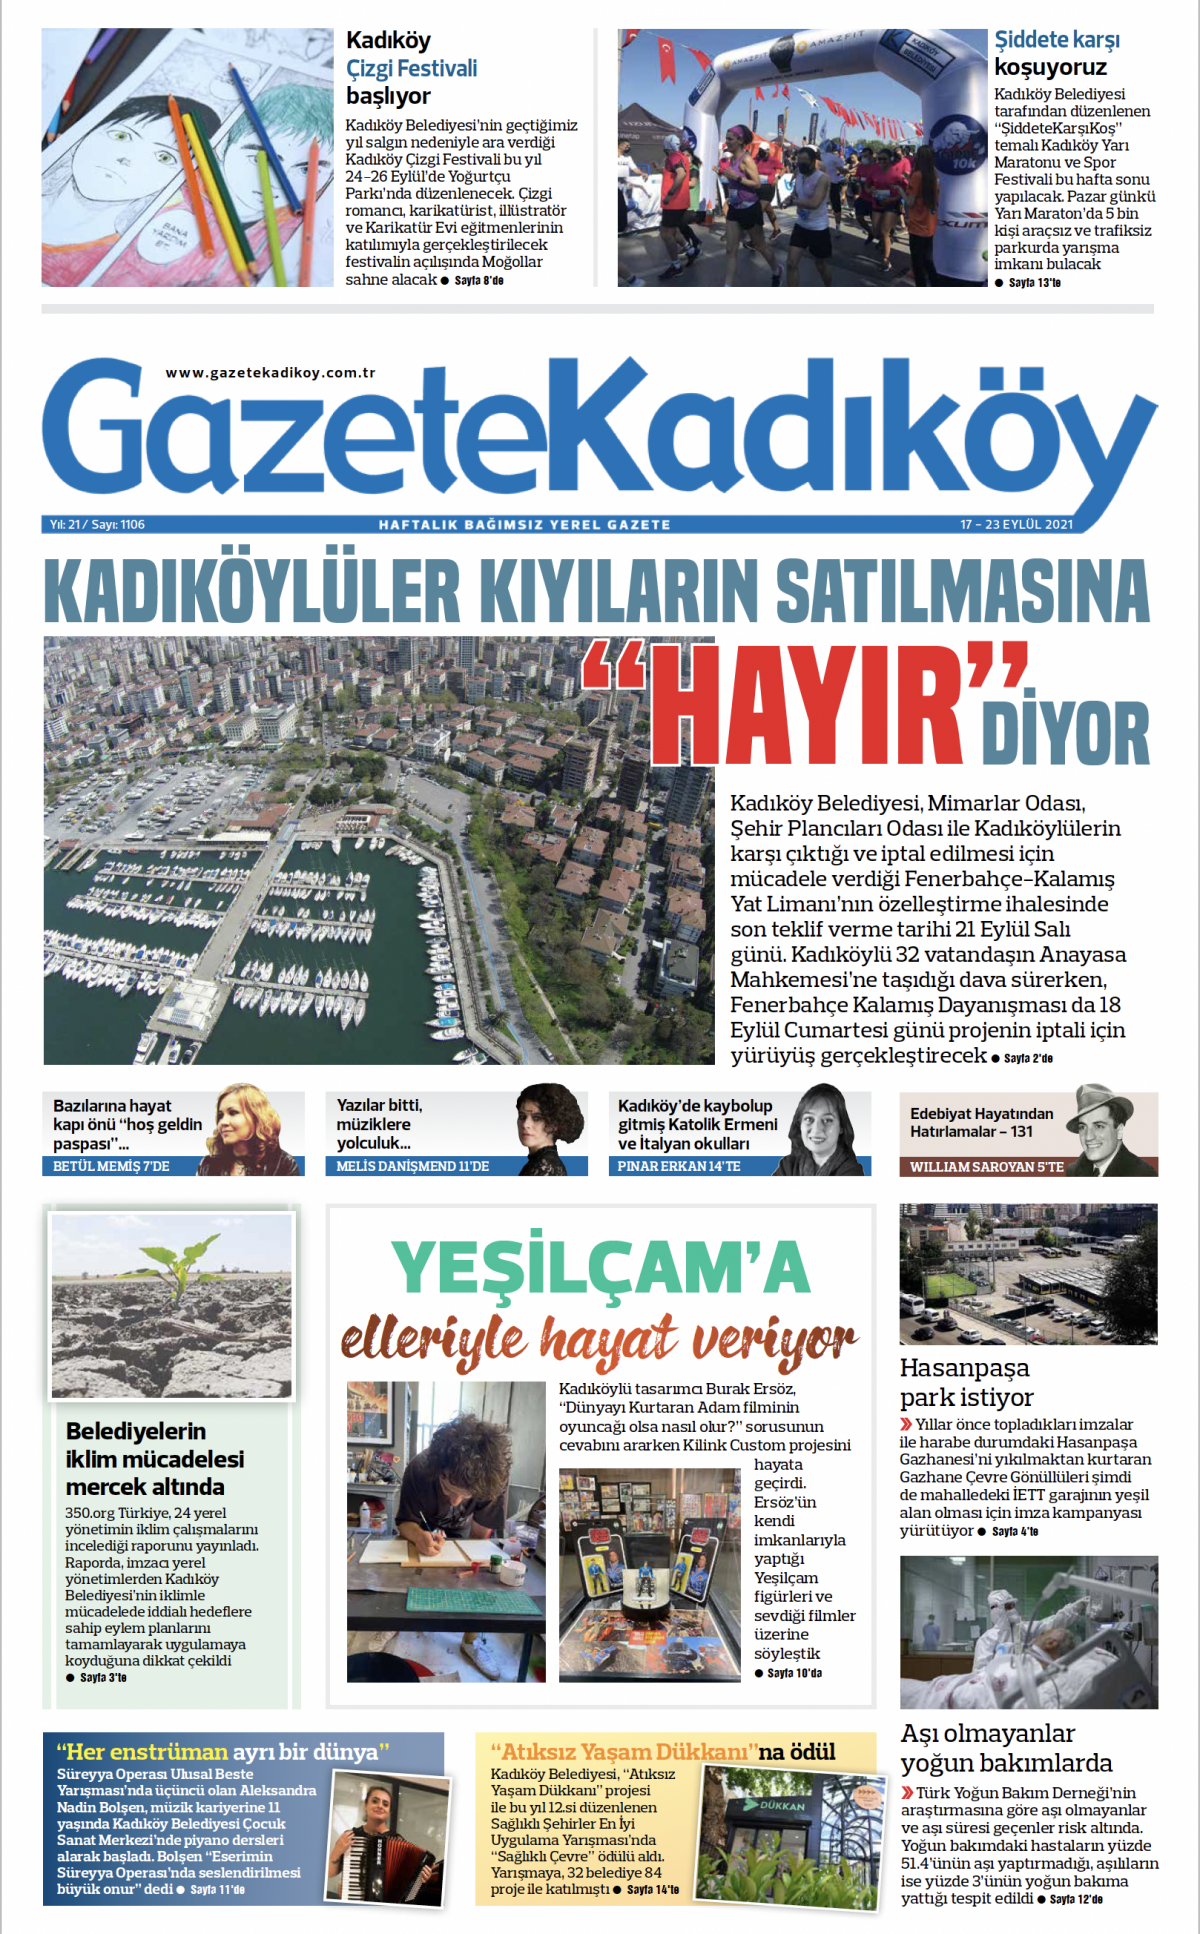 Gazete Kadıköy - 1106. Sayı